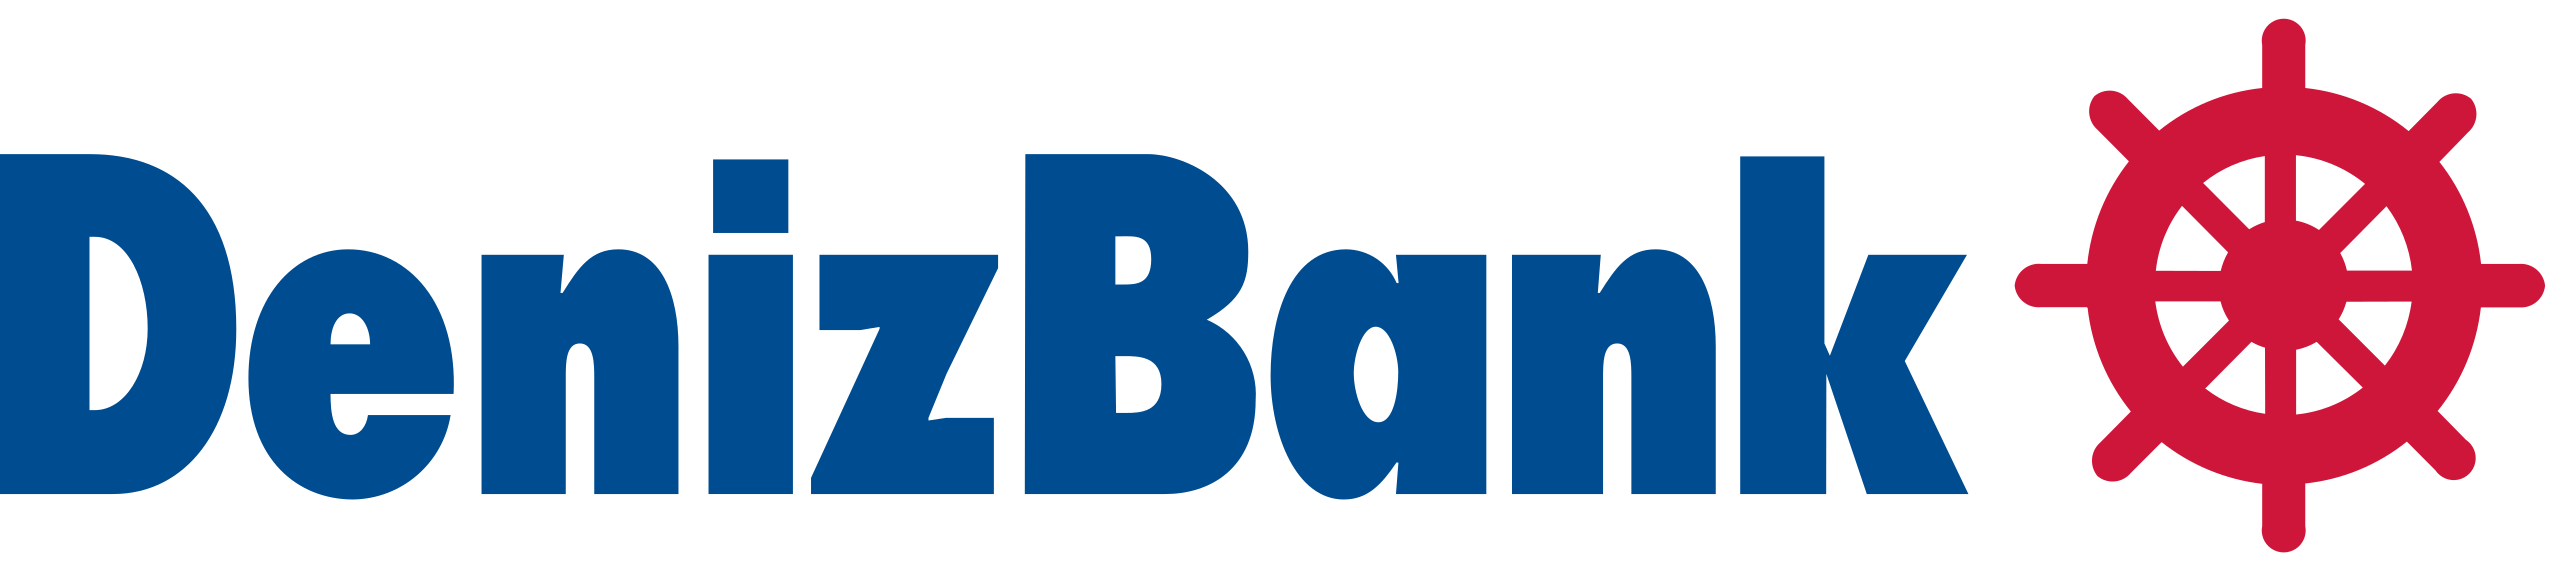 DenizBank logo